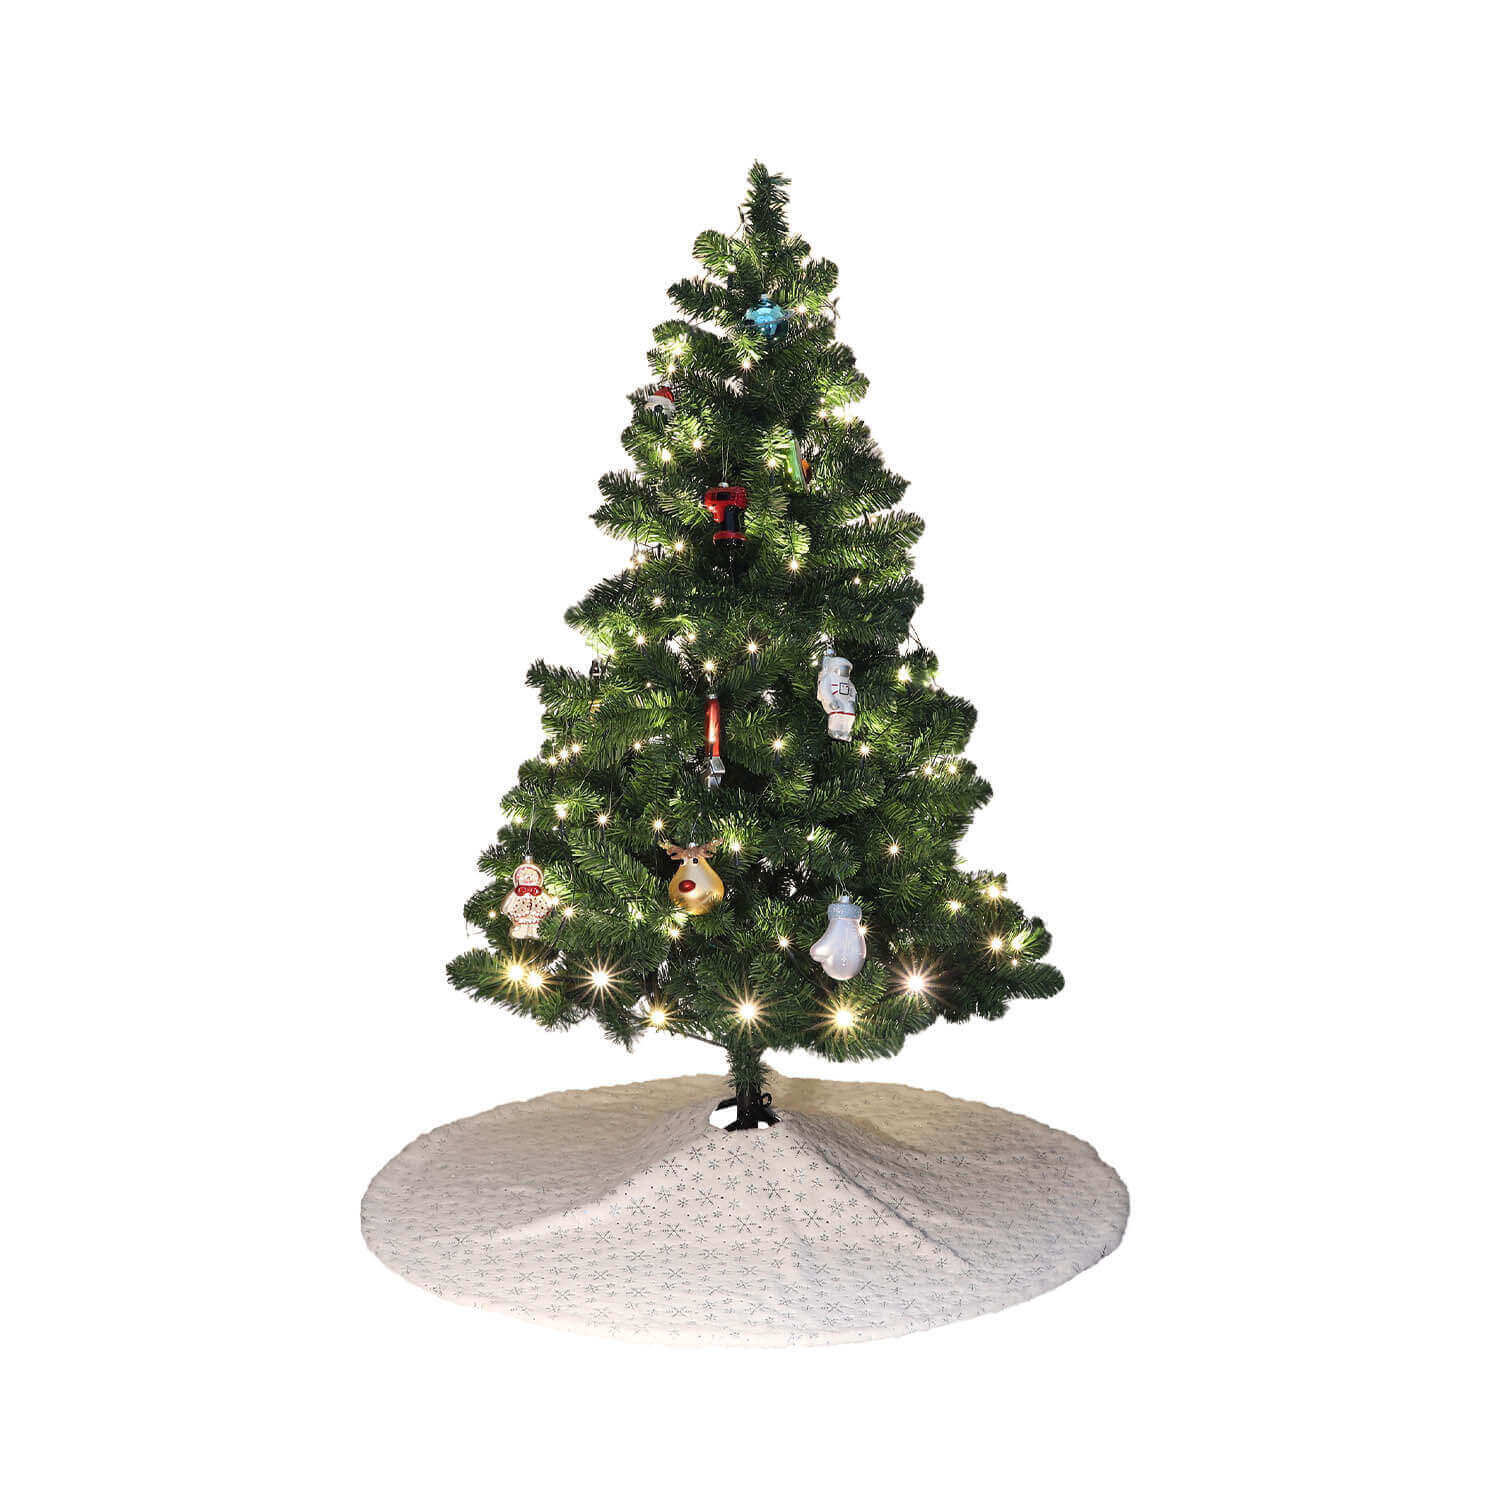 Weihnachtsbaumdecke aus Stoff mit weihnachtlichen Ornamenten, weiß/silber